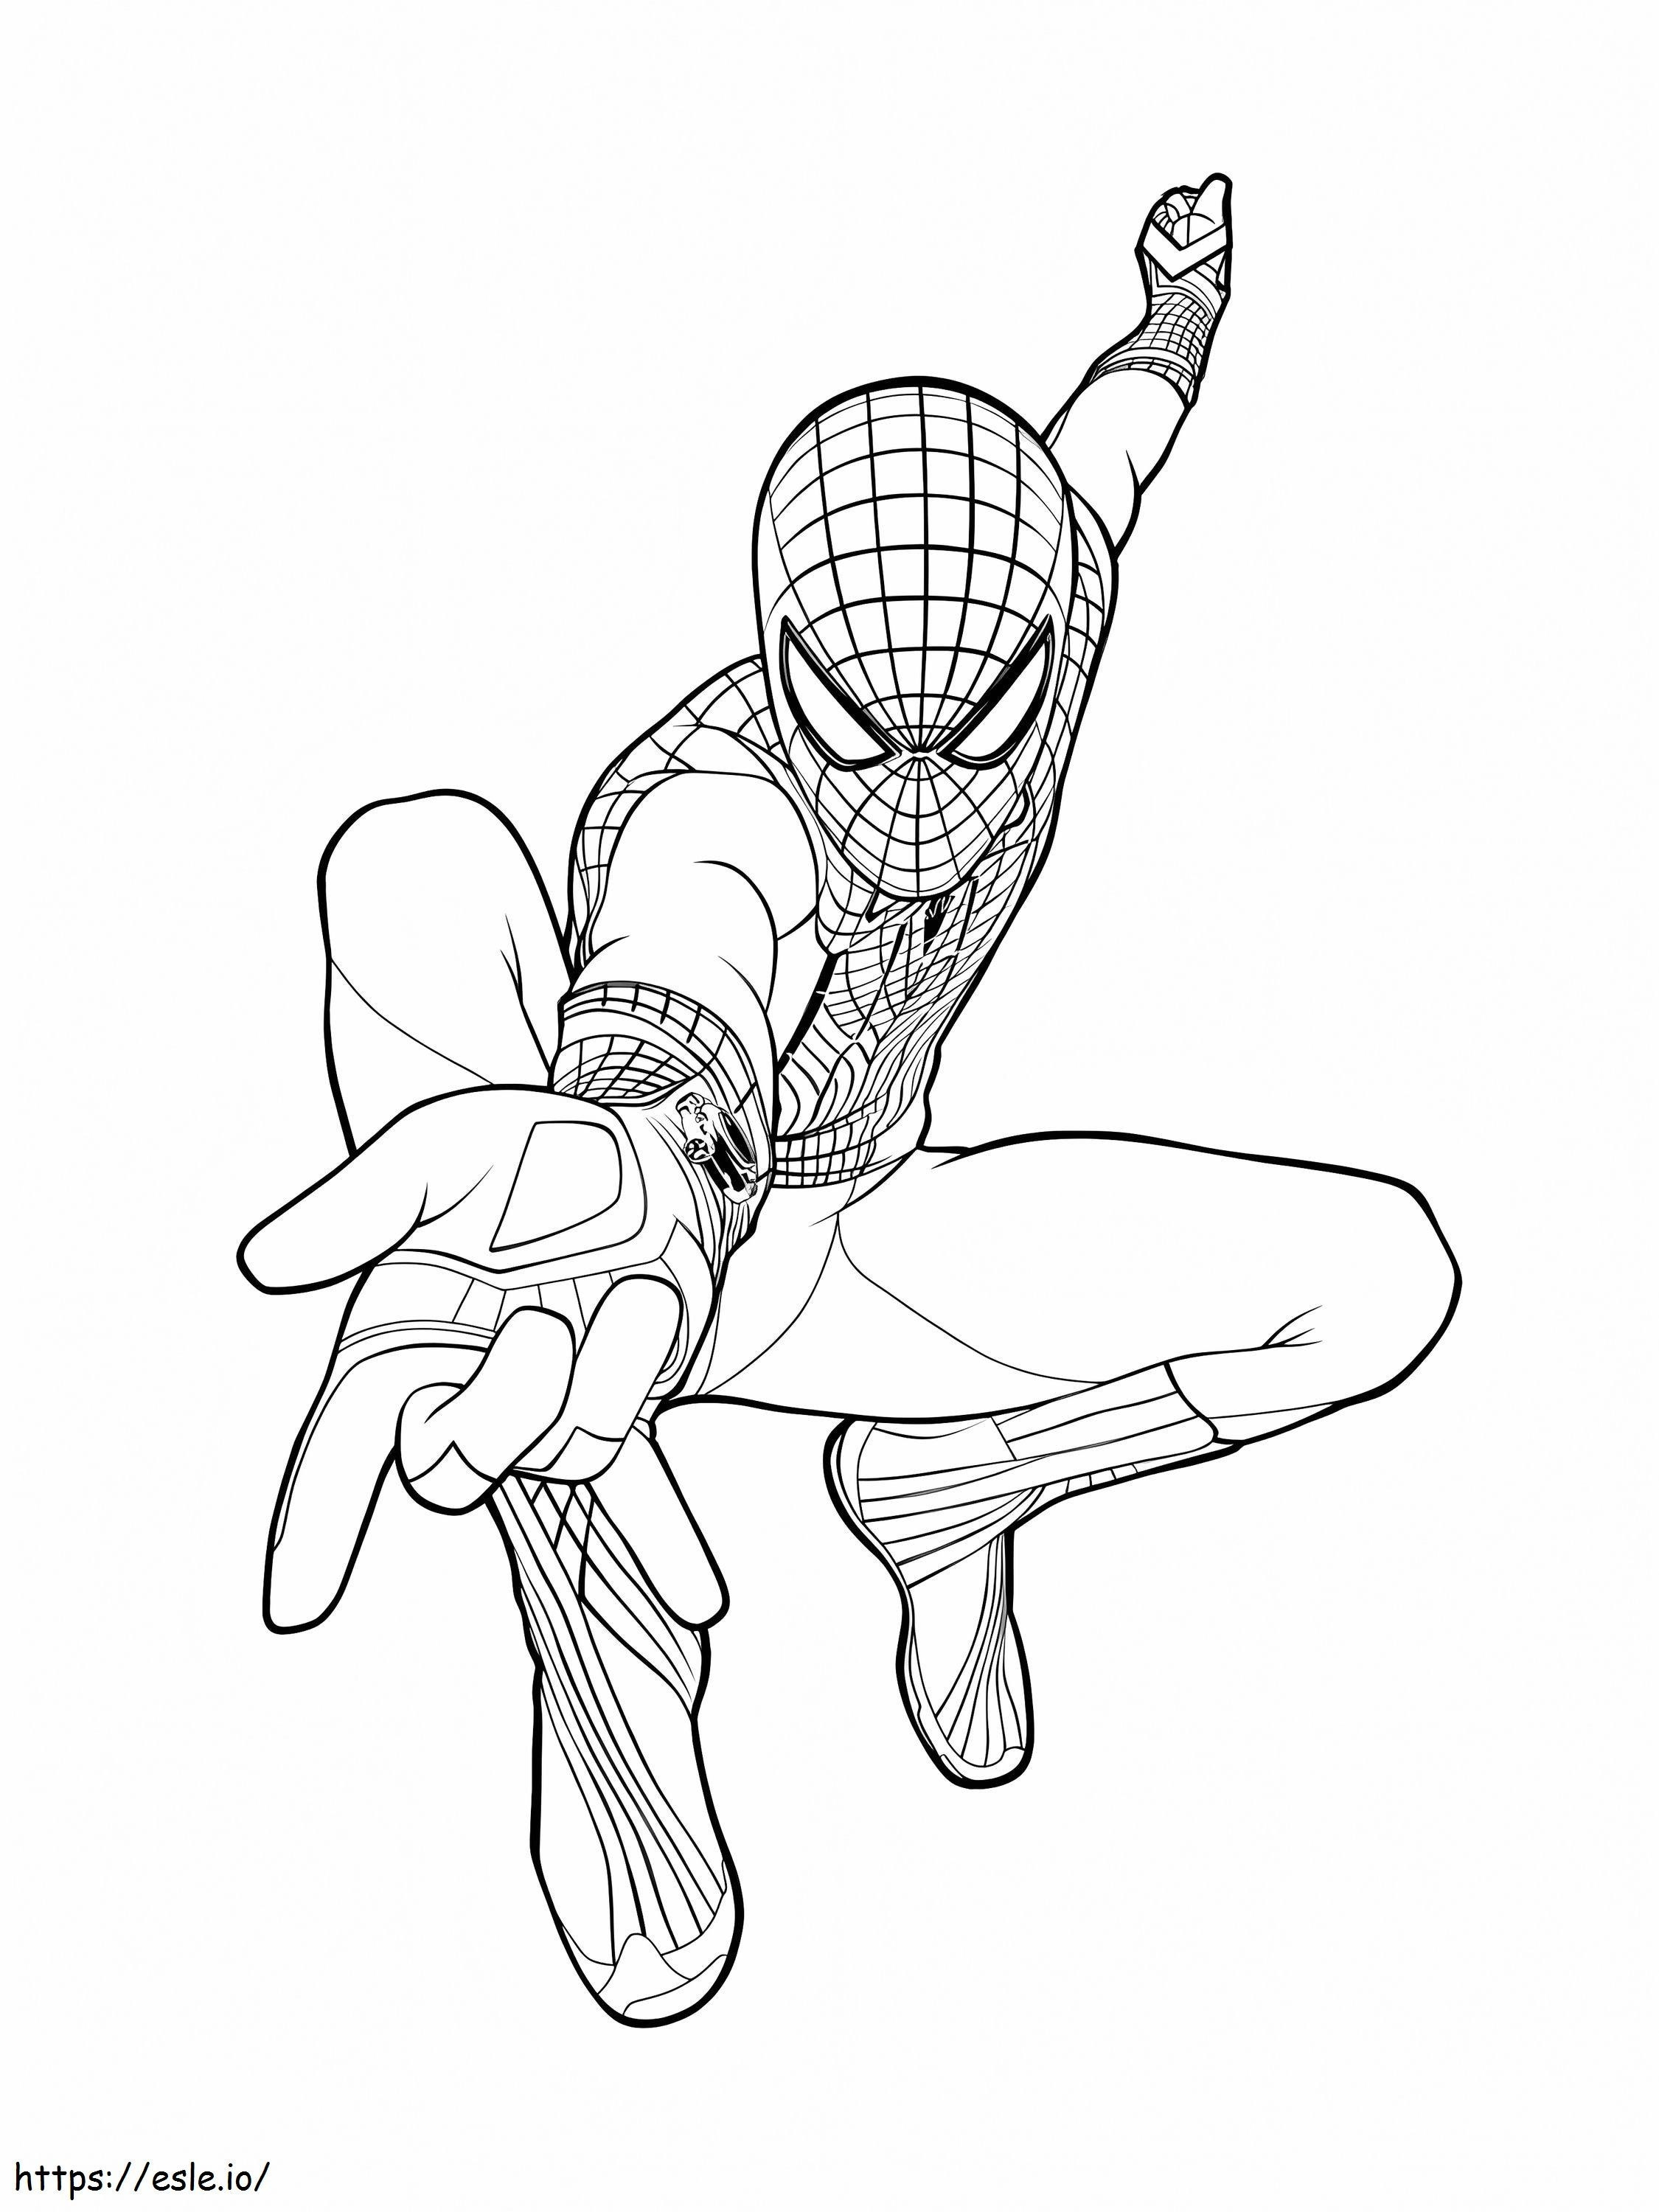 Coloriage Spider-Man 9 768X1024 à imprimer dessin